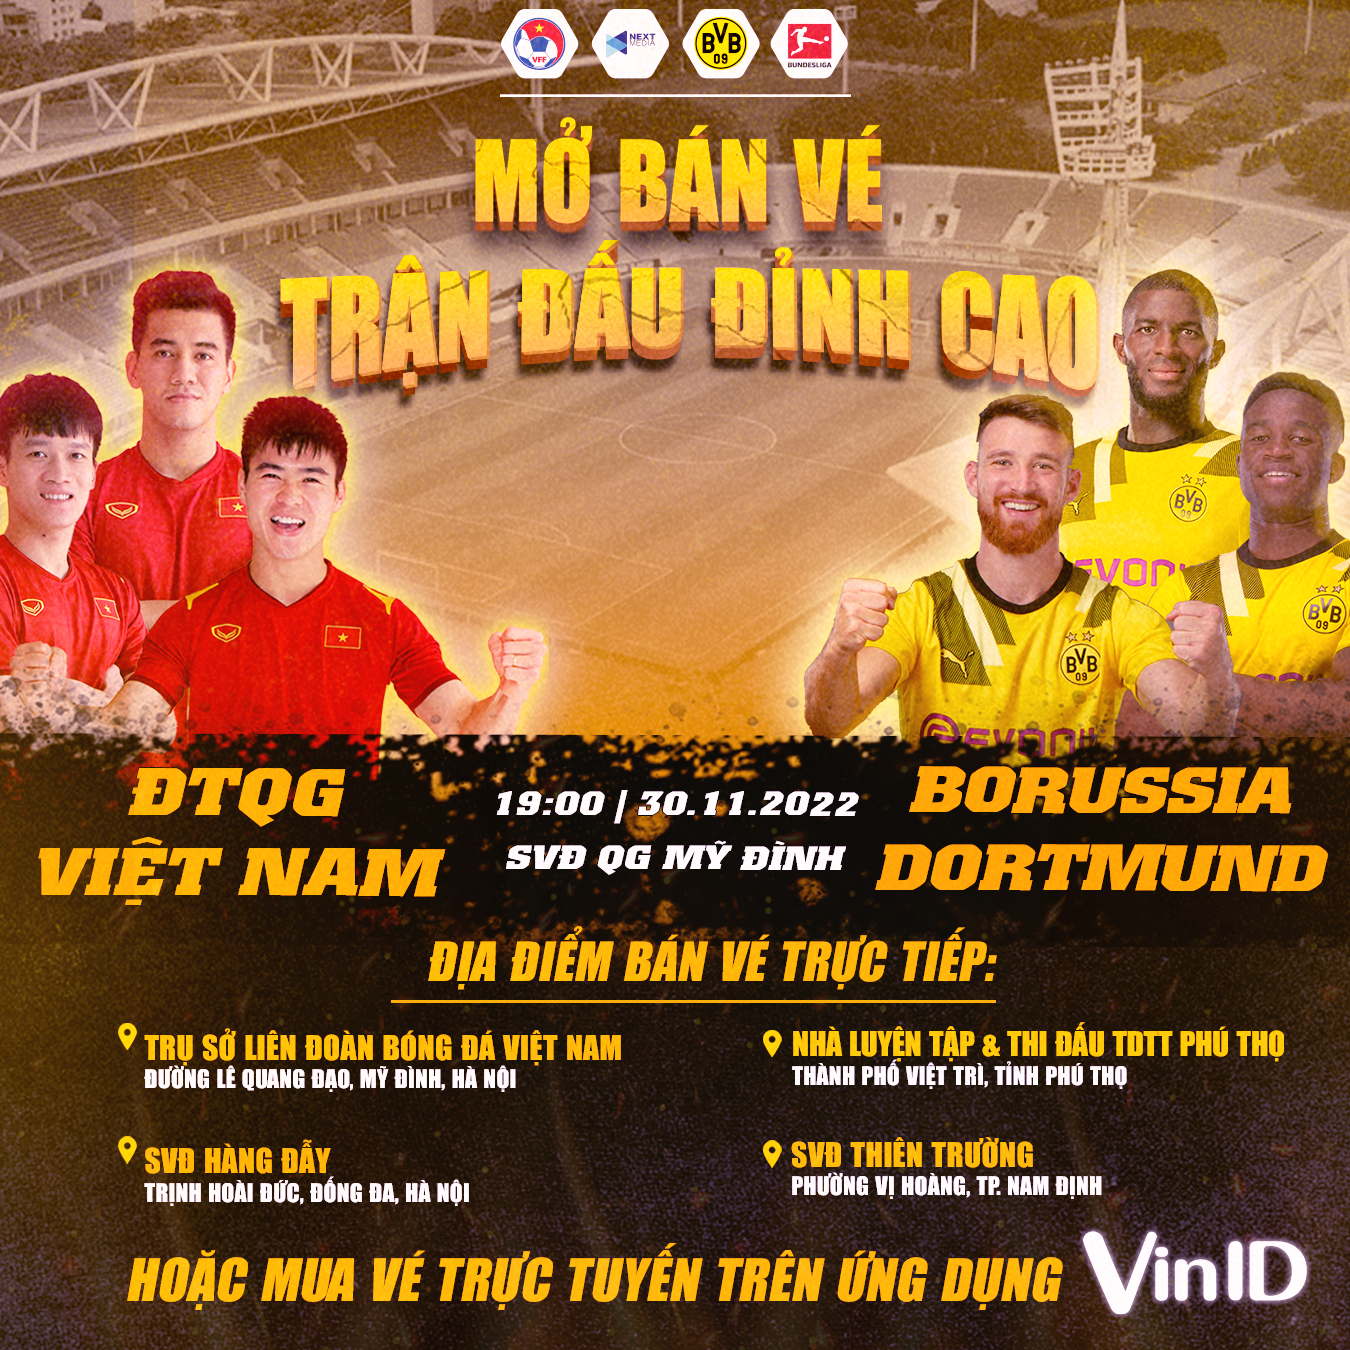 Trận Việt Nam vs Dortmund được mở bán vé trực tiếp tại 3 thành phố 